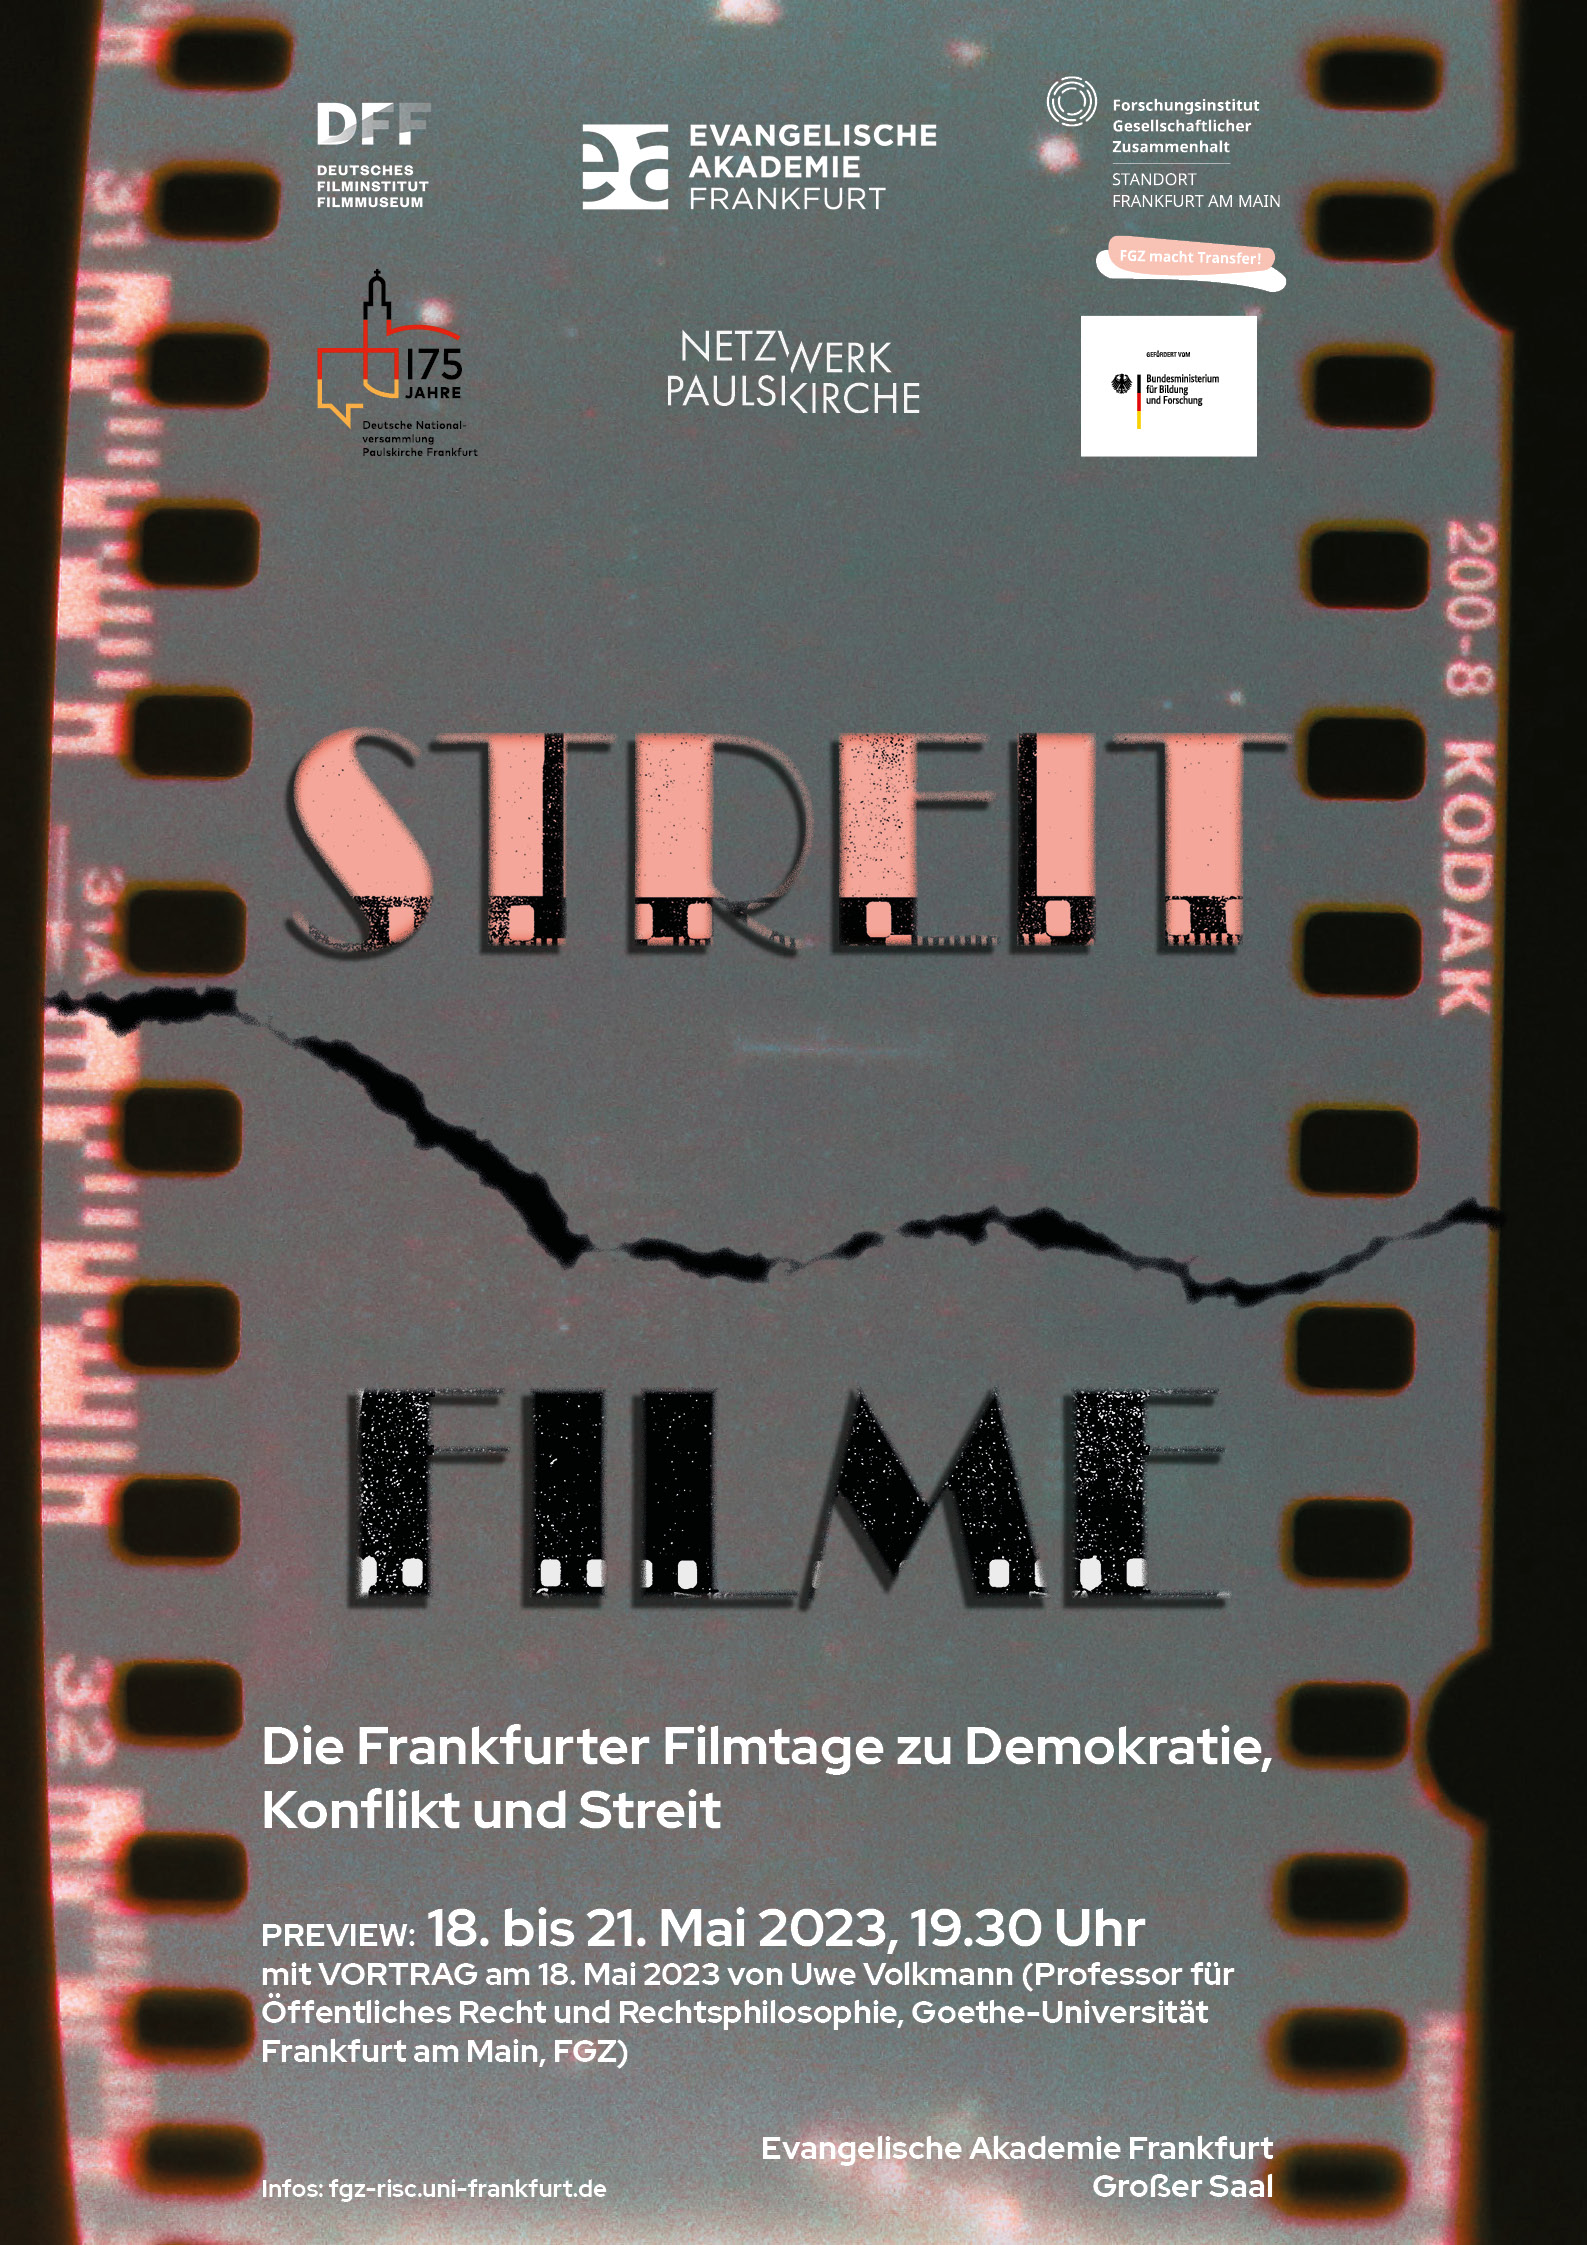 StreitFilme - Preview der Frankfurter Filmtage zu Demokratie, Konflikt und Streit